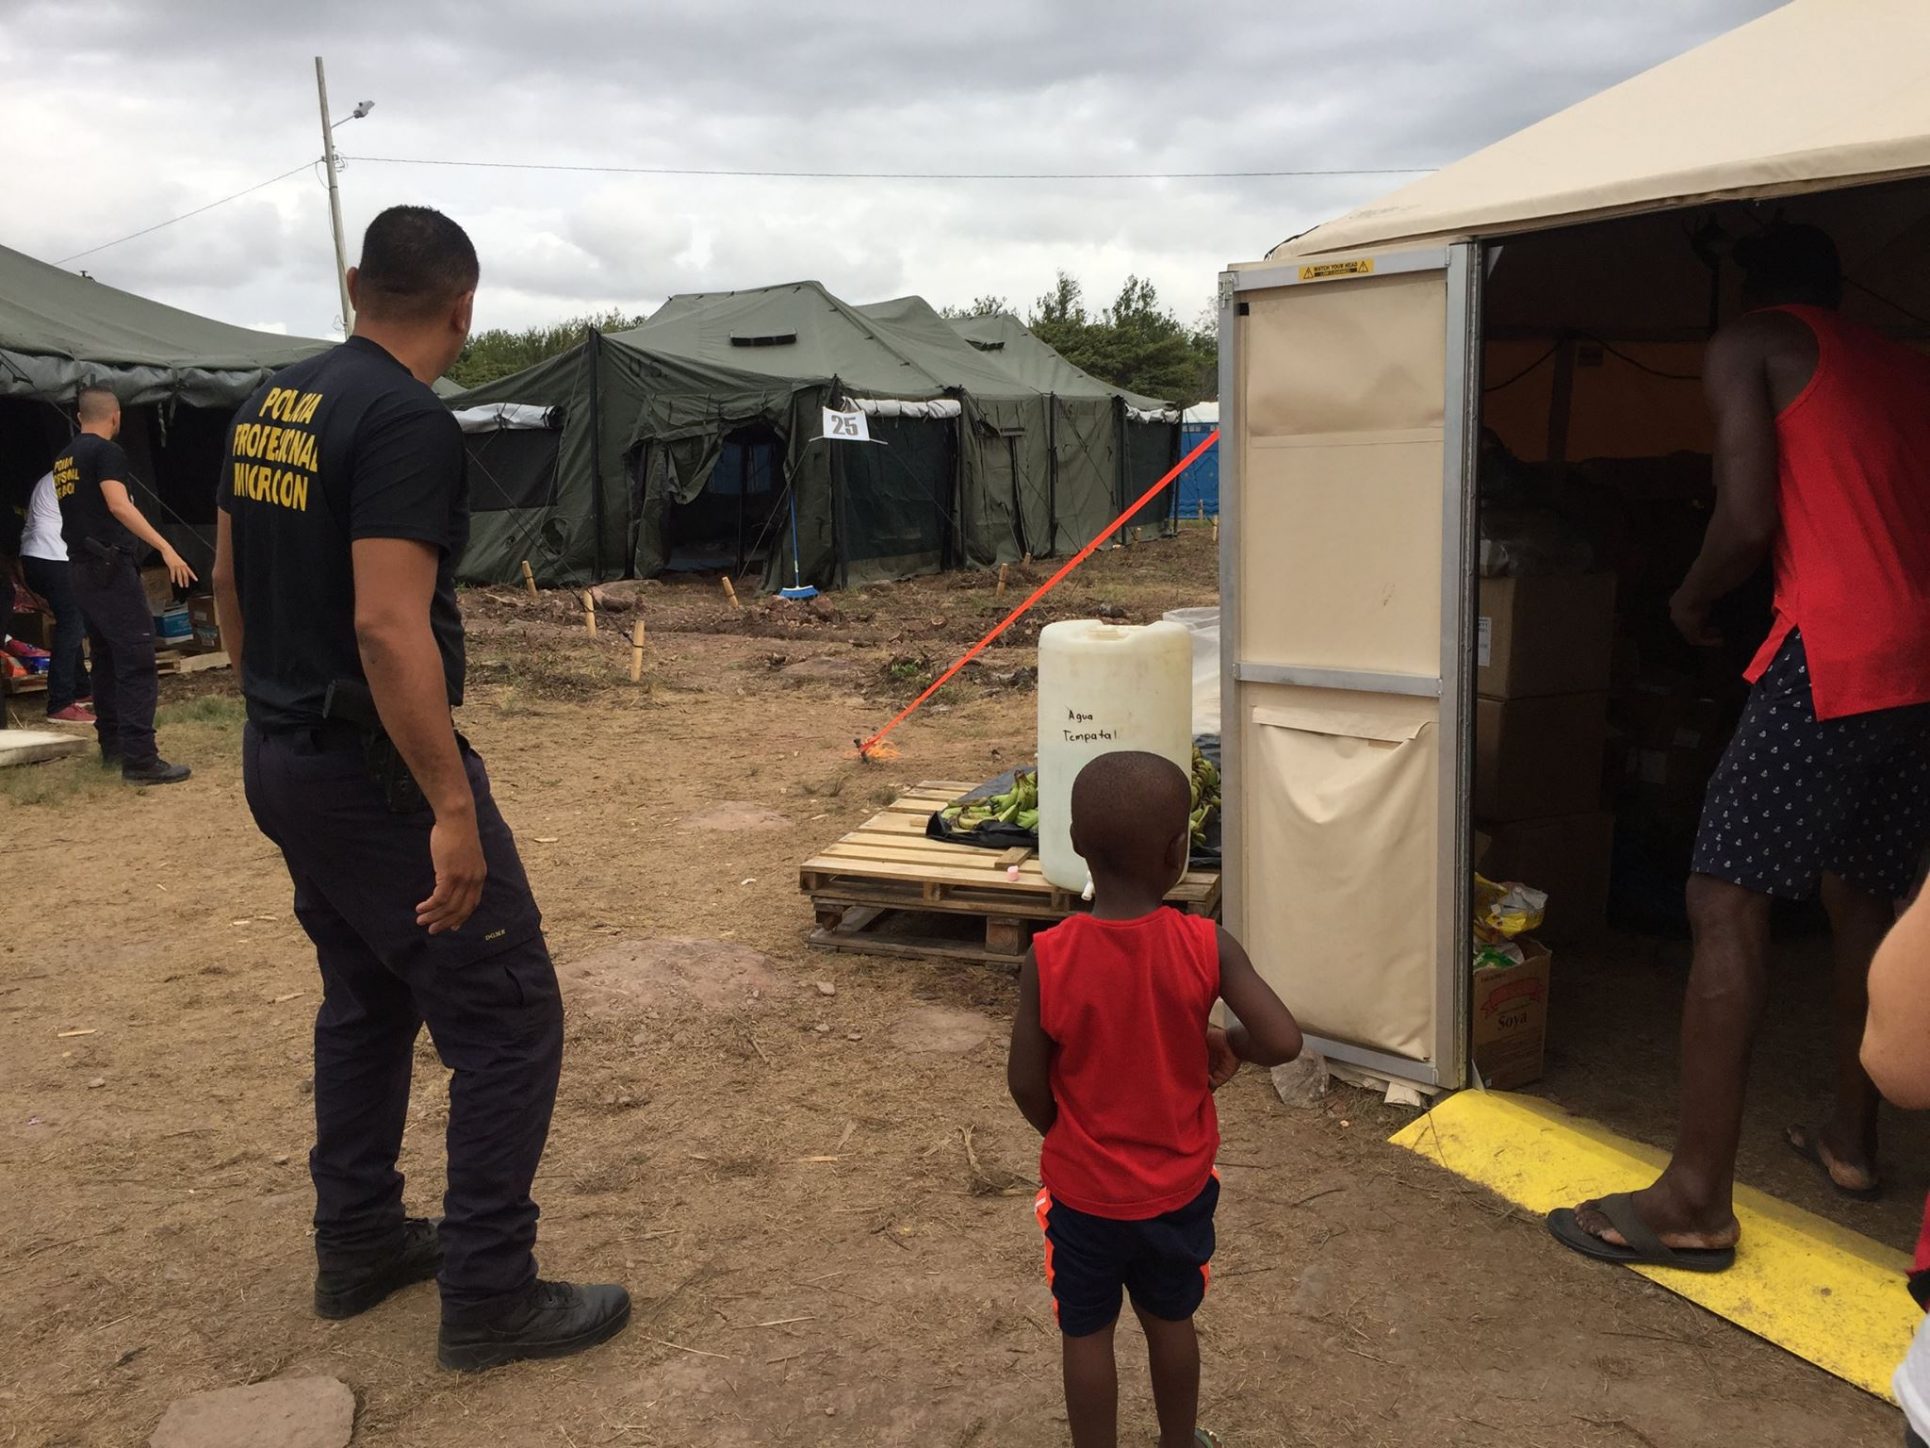 Pandemia altera búsqueda de refugio de migrantes; mientras sistema carece de soluciones duraderas